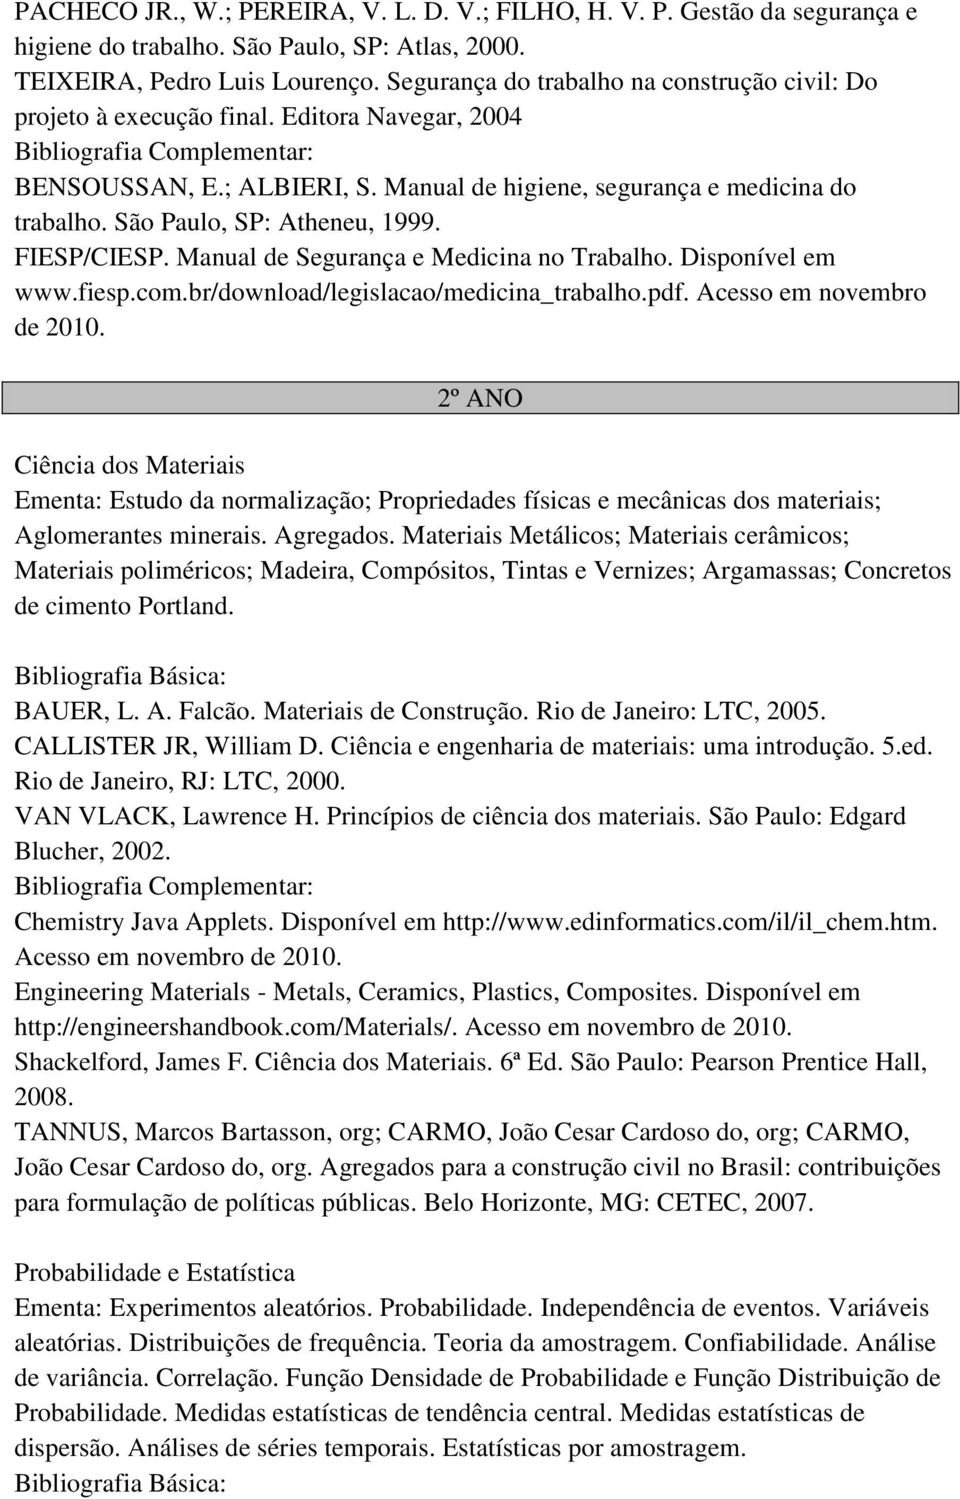 São Paulo, SP: Atheneu, 1999. FIESP/CIESP. Manual de Segurança e Medicina no Trabalho. Disponível em www.fiesp.com.br/download/legislacao/medicina_trabalho.pdf. Acesso em novembro de 2010.